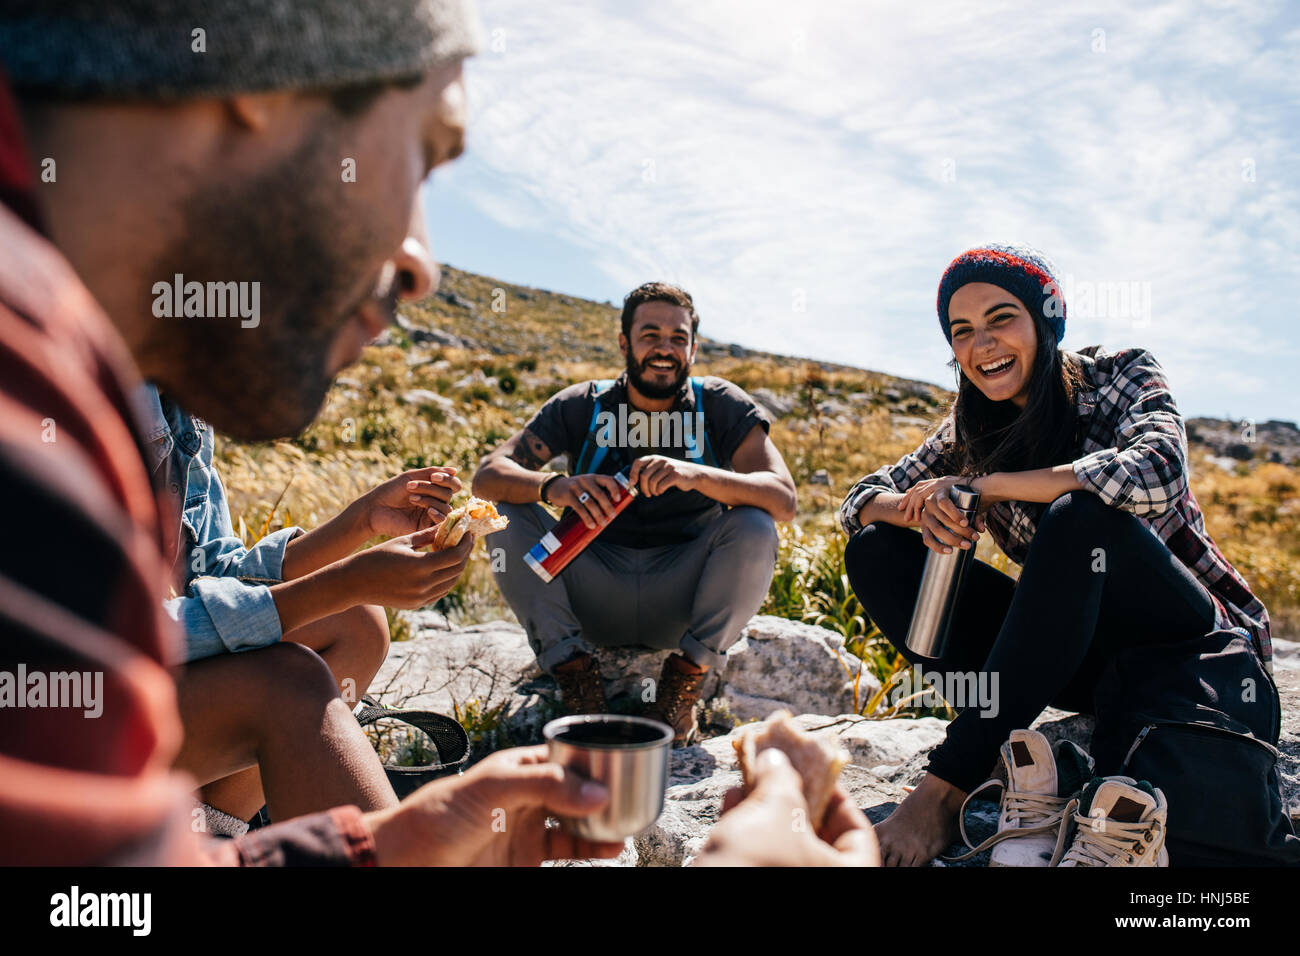 Gruppo di persone rilassarsi e mangiare durante l'escursione. Giovane donna con amici prendendo una pausa durante una passeggiata in campagna. Foto Stock